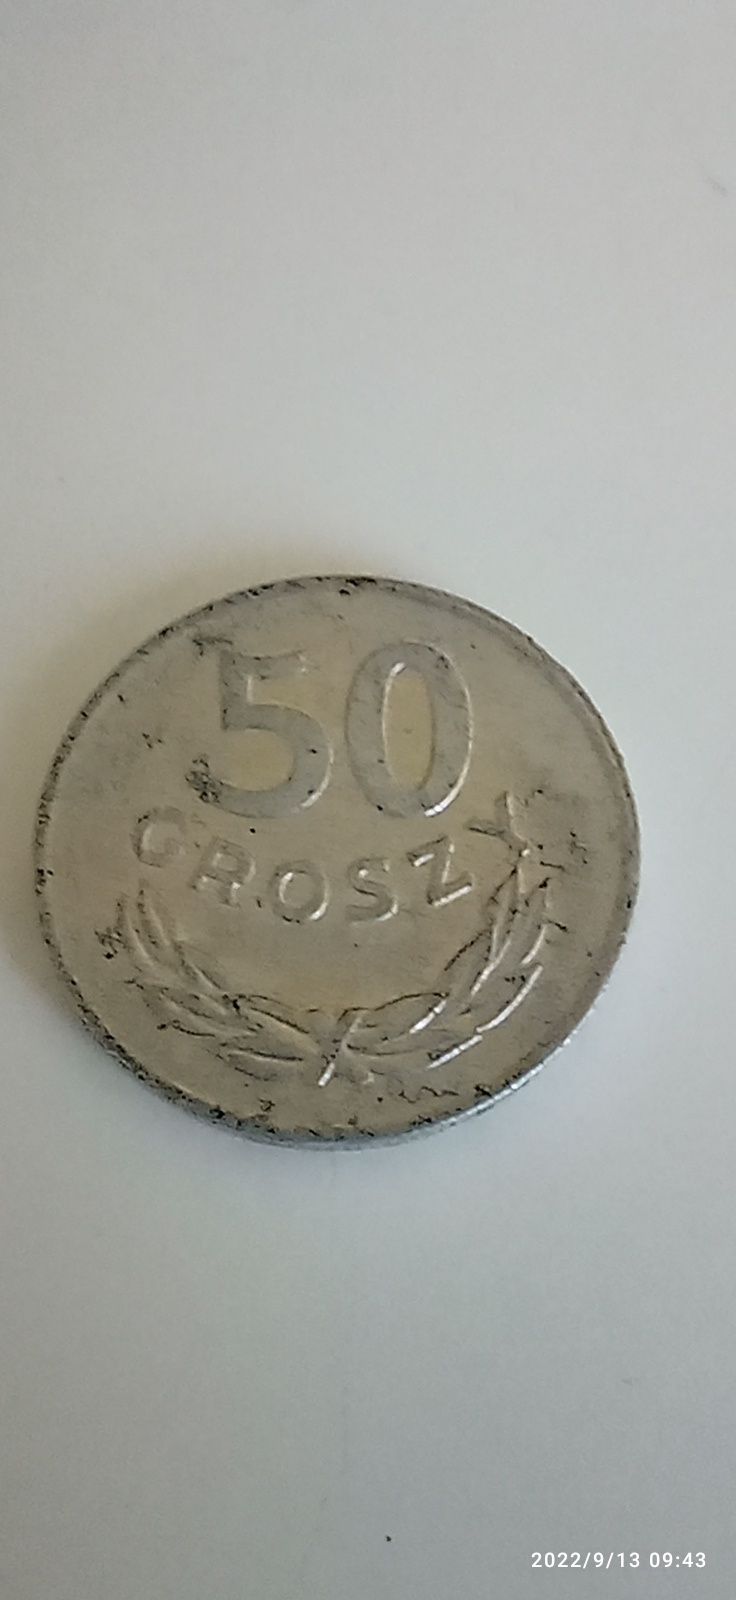 50 groszy polskie 1985 r